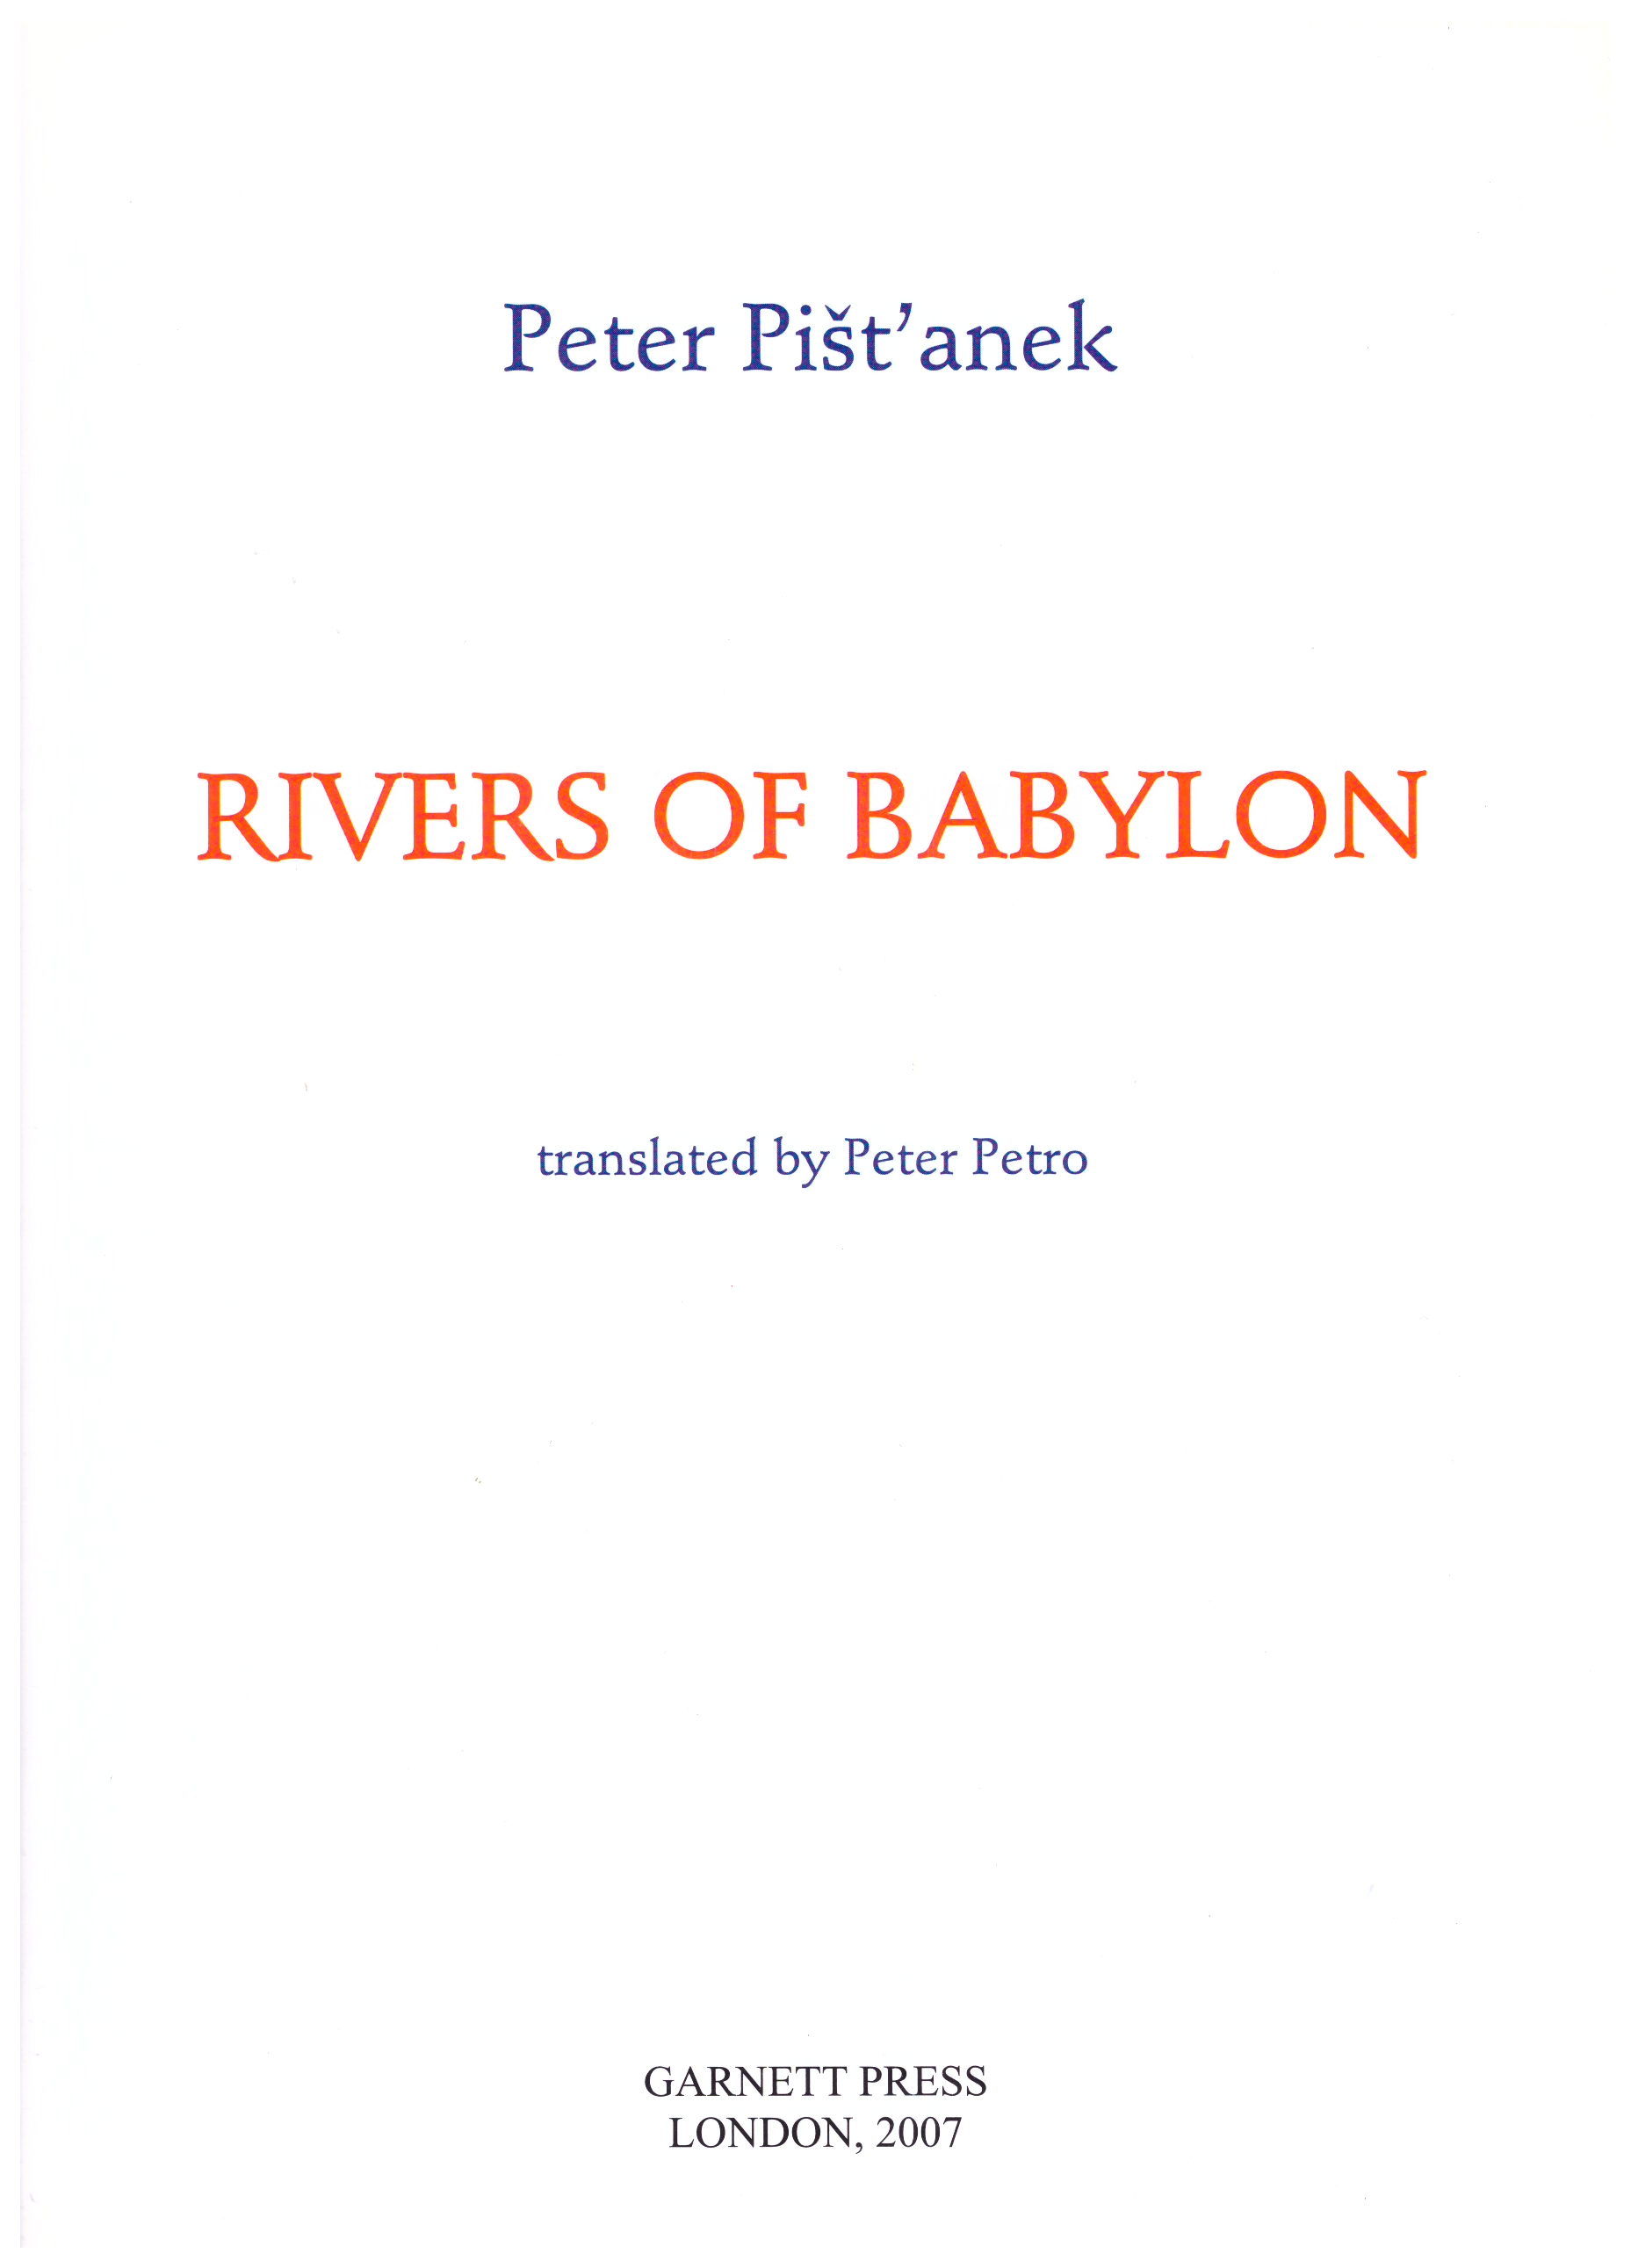 rivers of babylon